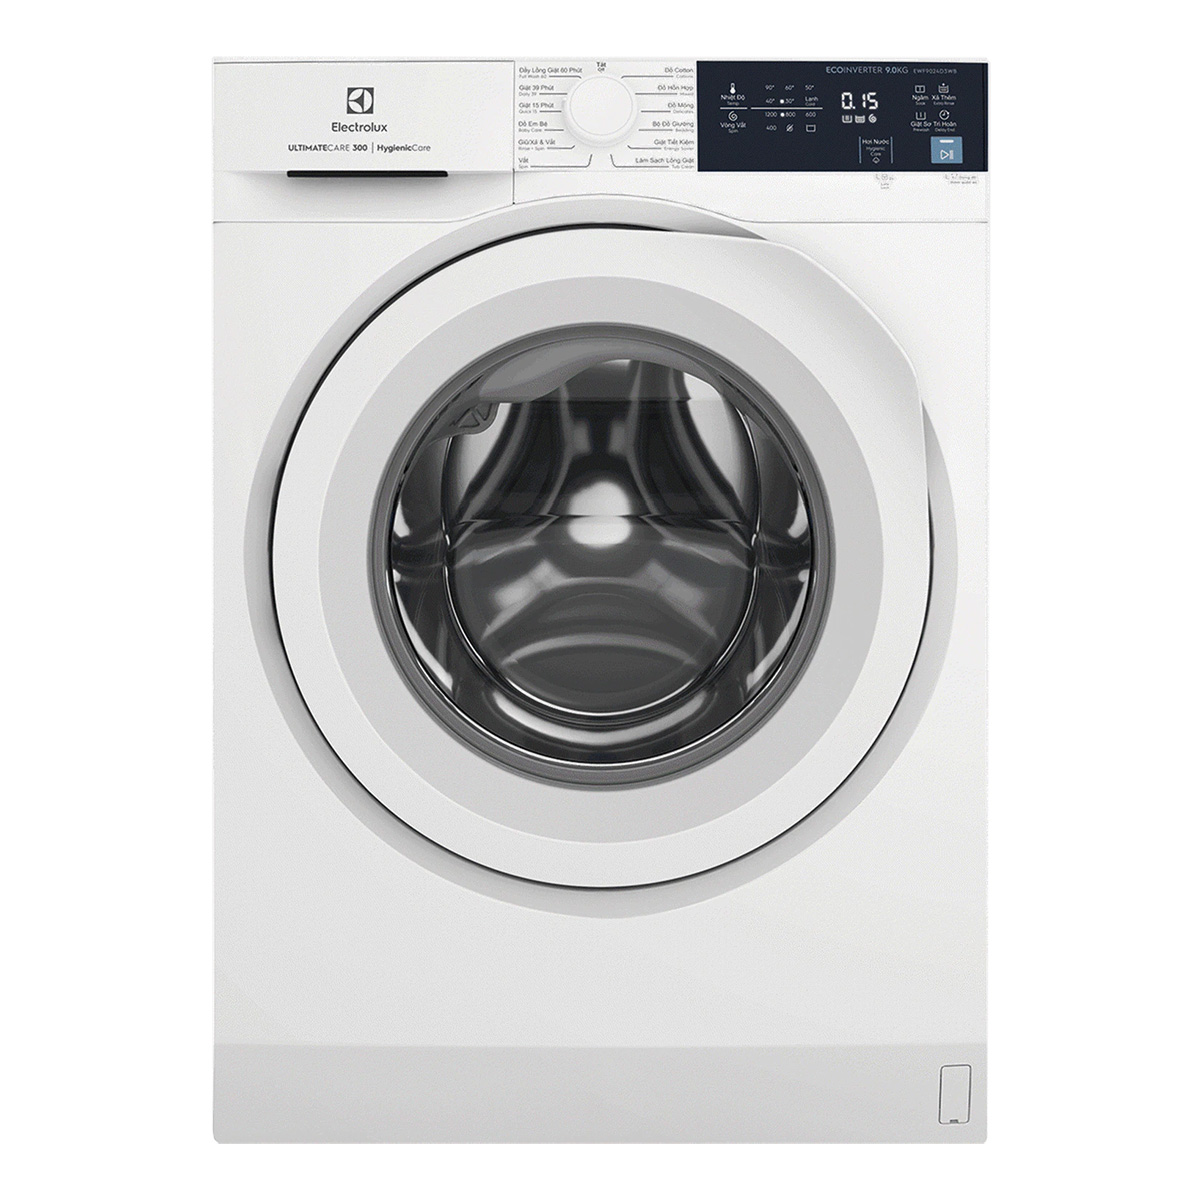 Máy giặt Electrolux EWF10744 chính hãng, giá rẻ, uy tín